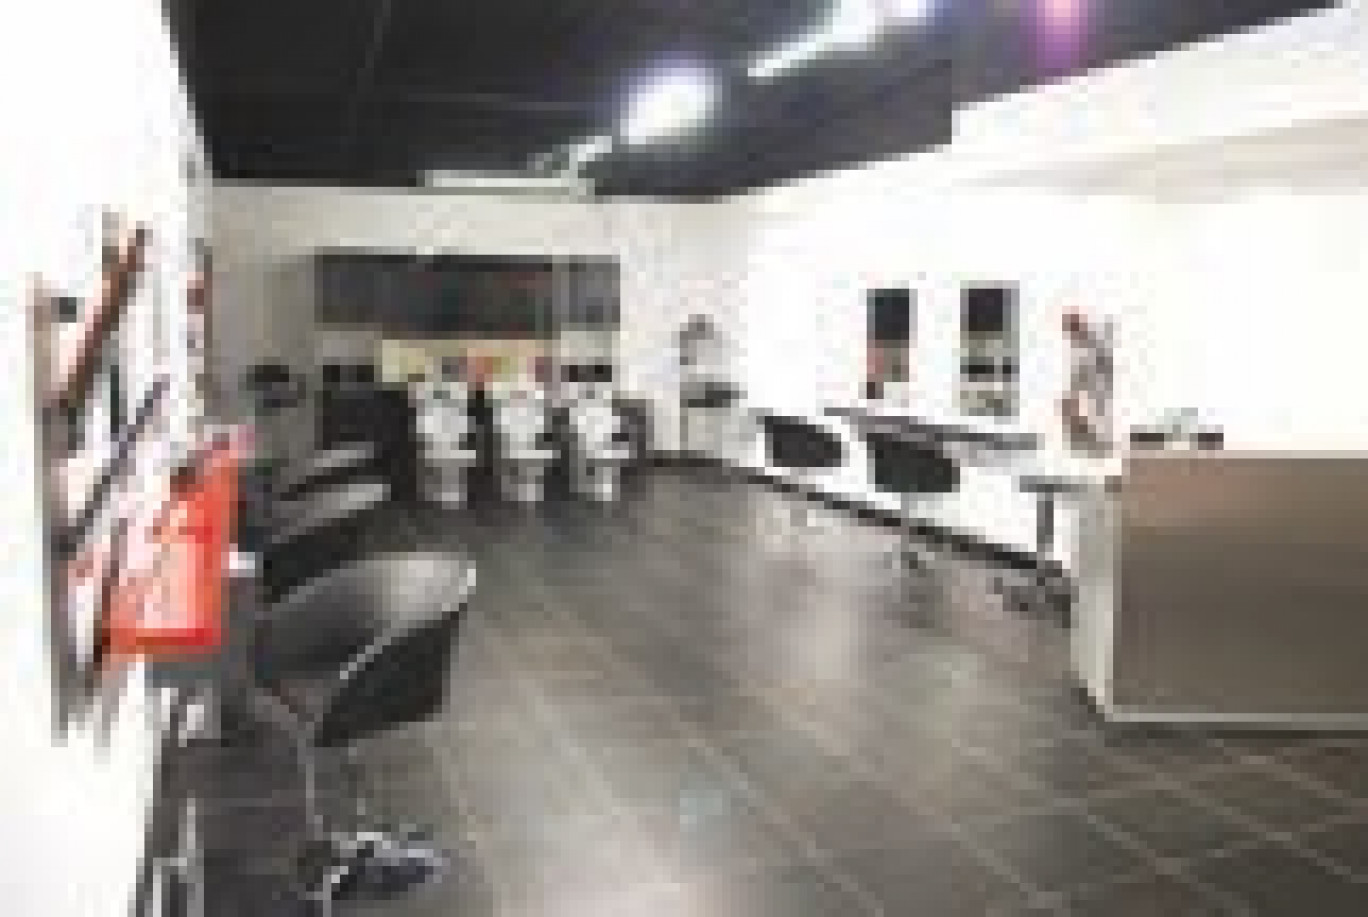 Un salon de coiffure flambant neuf dans la galerie marchande d’Intermarché à Roye.